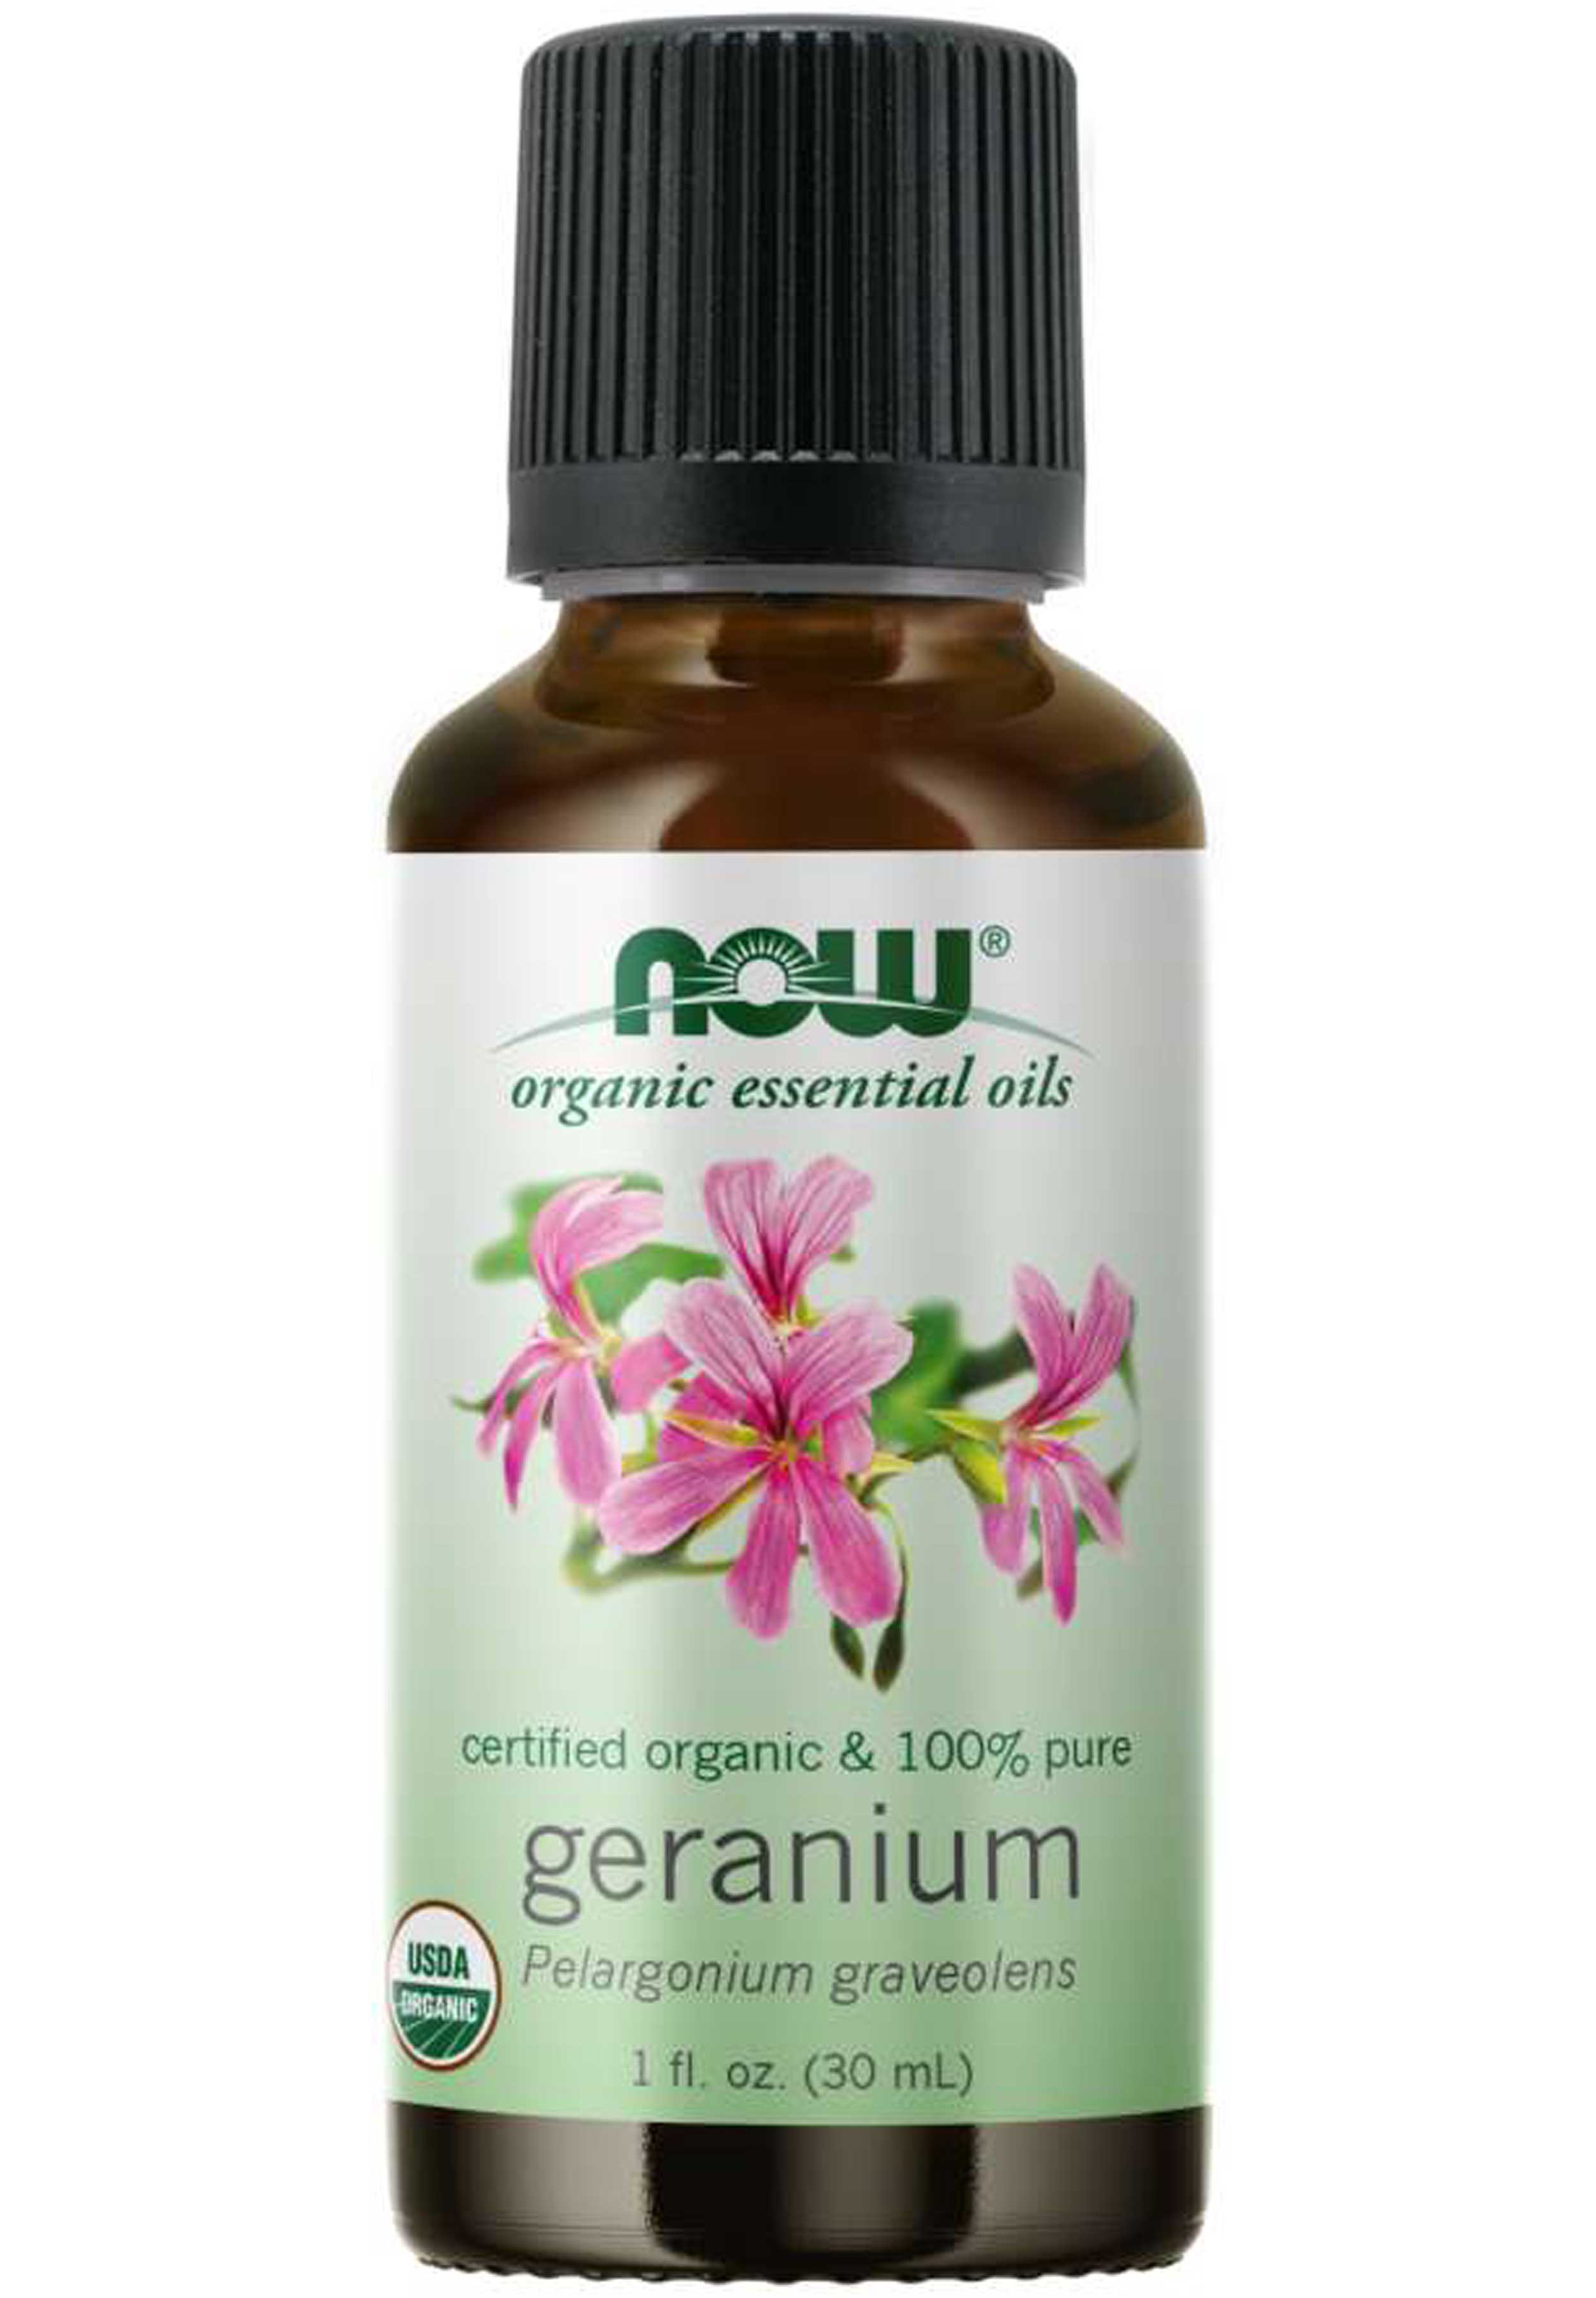 NOW Organic Essential Oils Geranium Oil